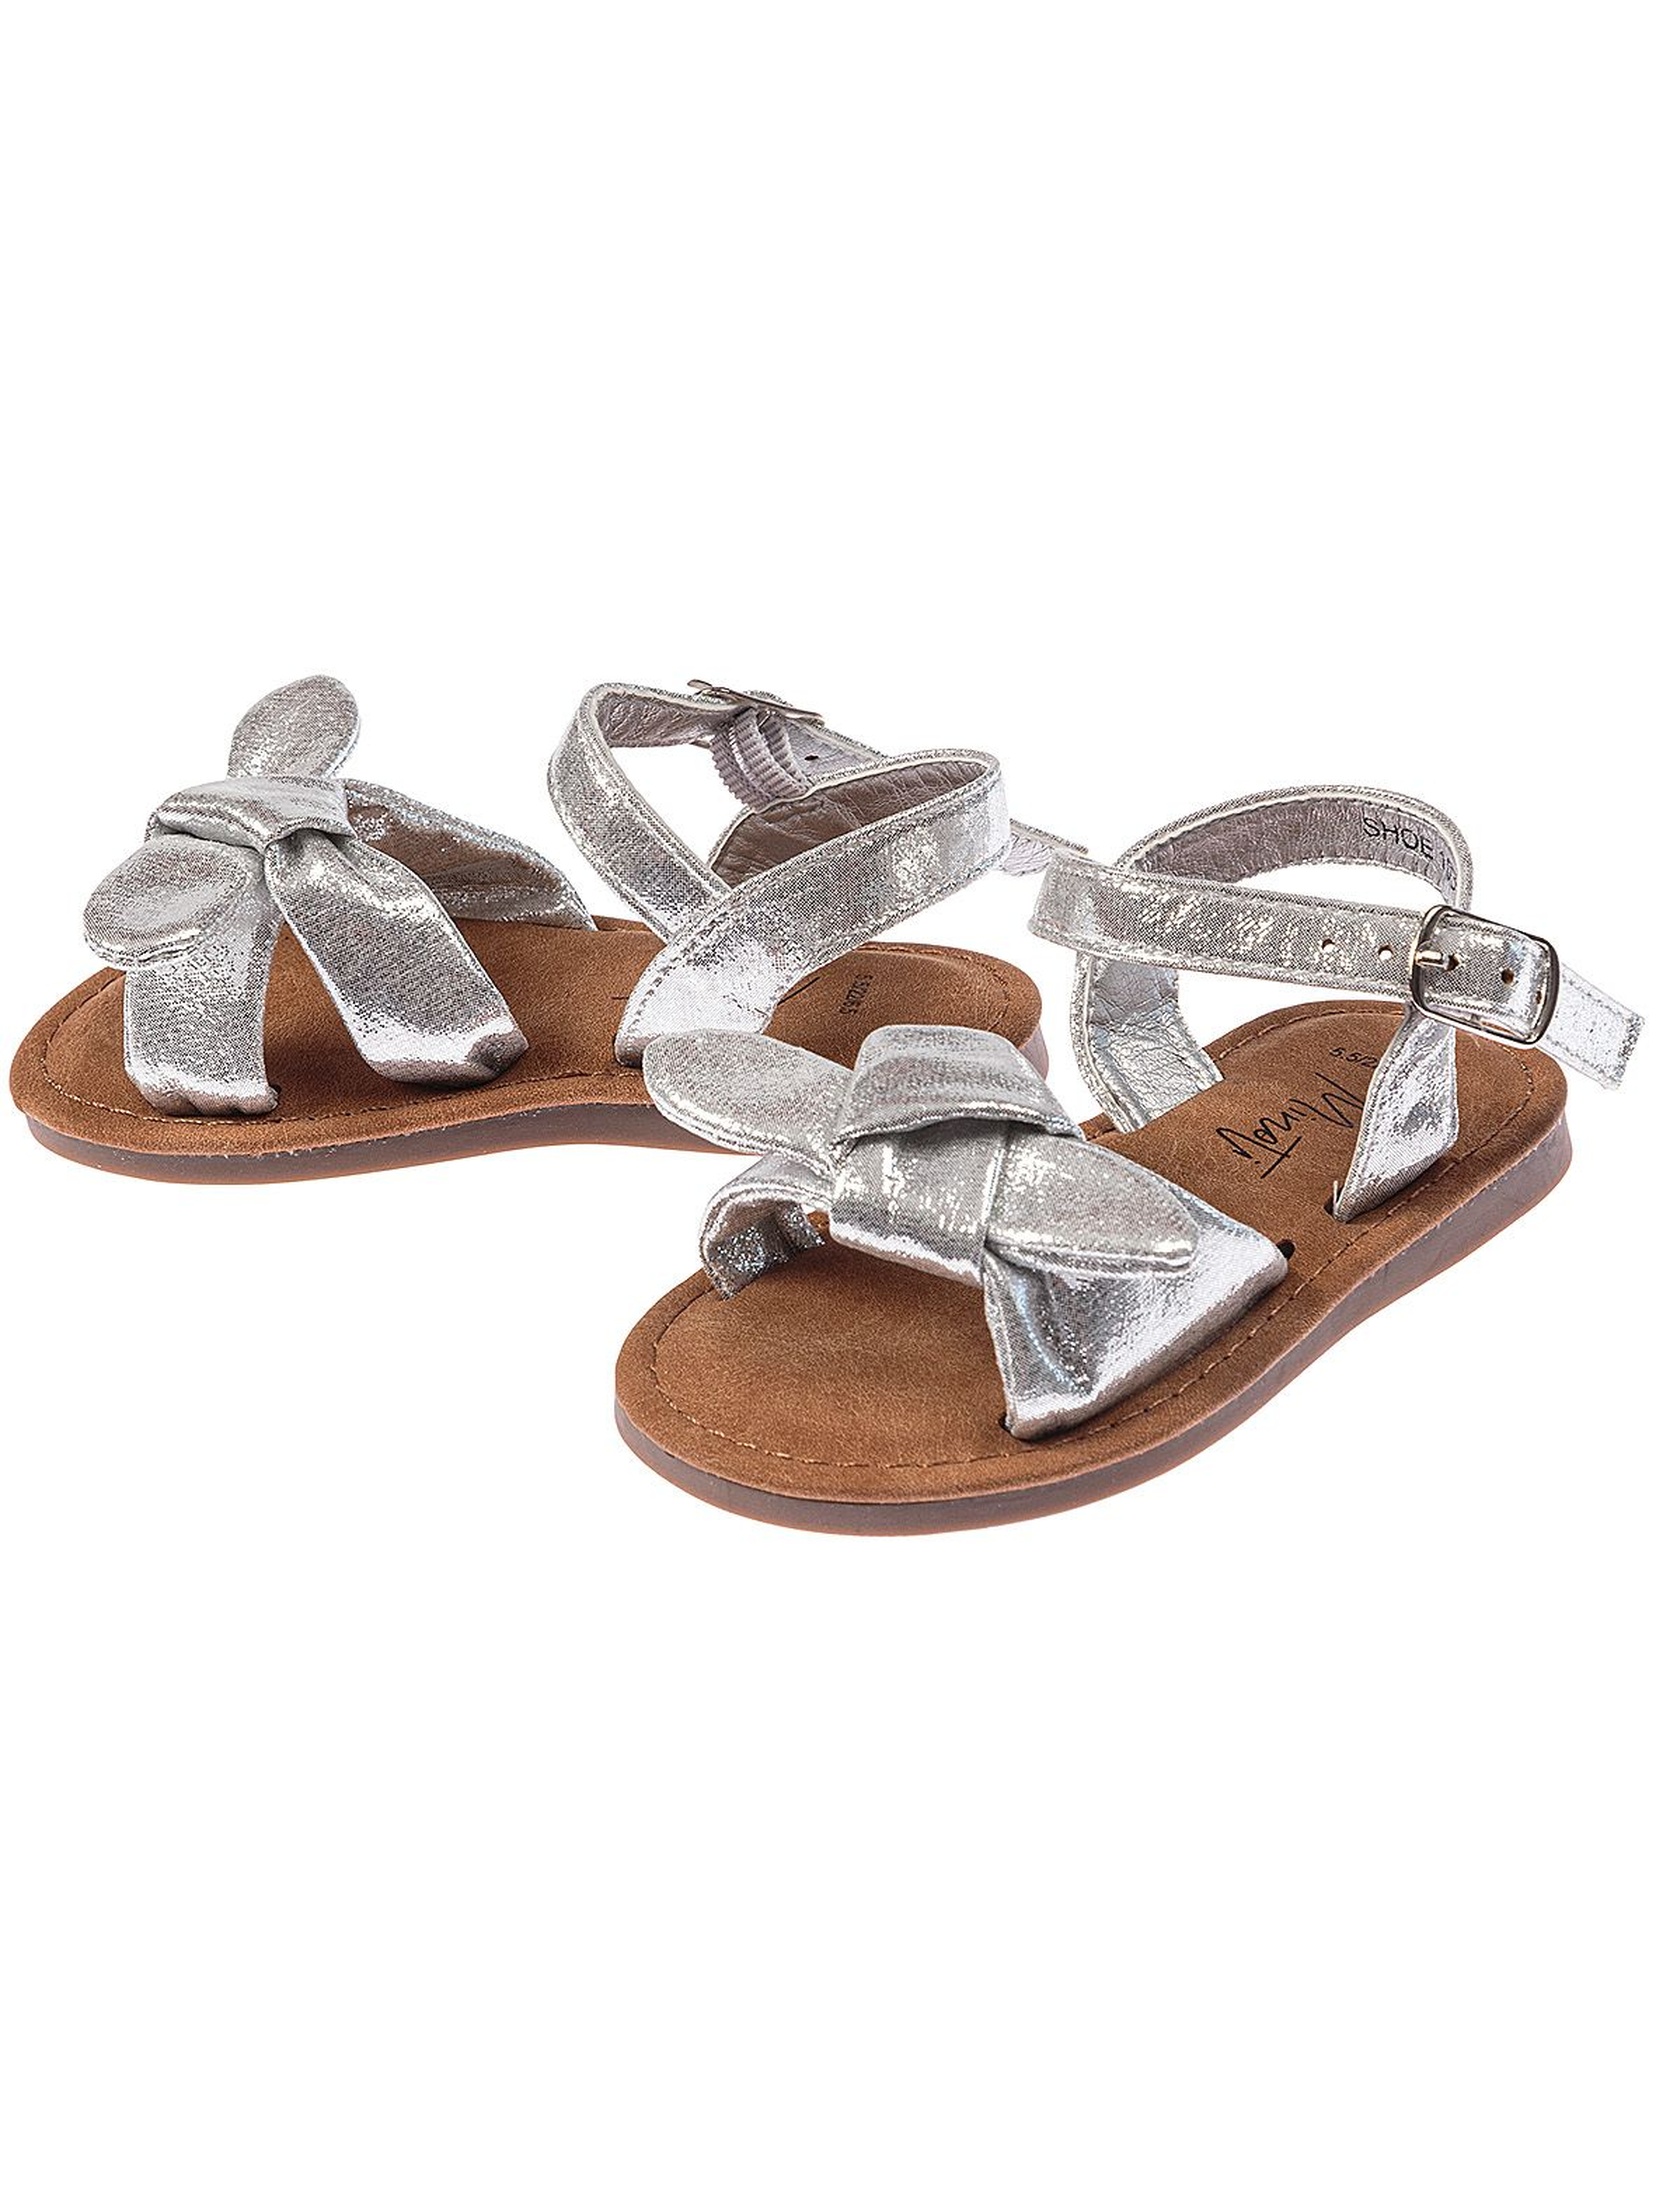 Sandały dziewczęce srebrne z kokardkami